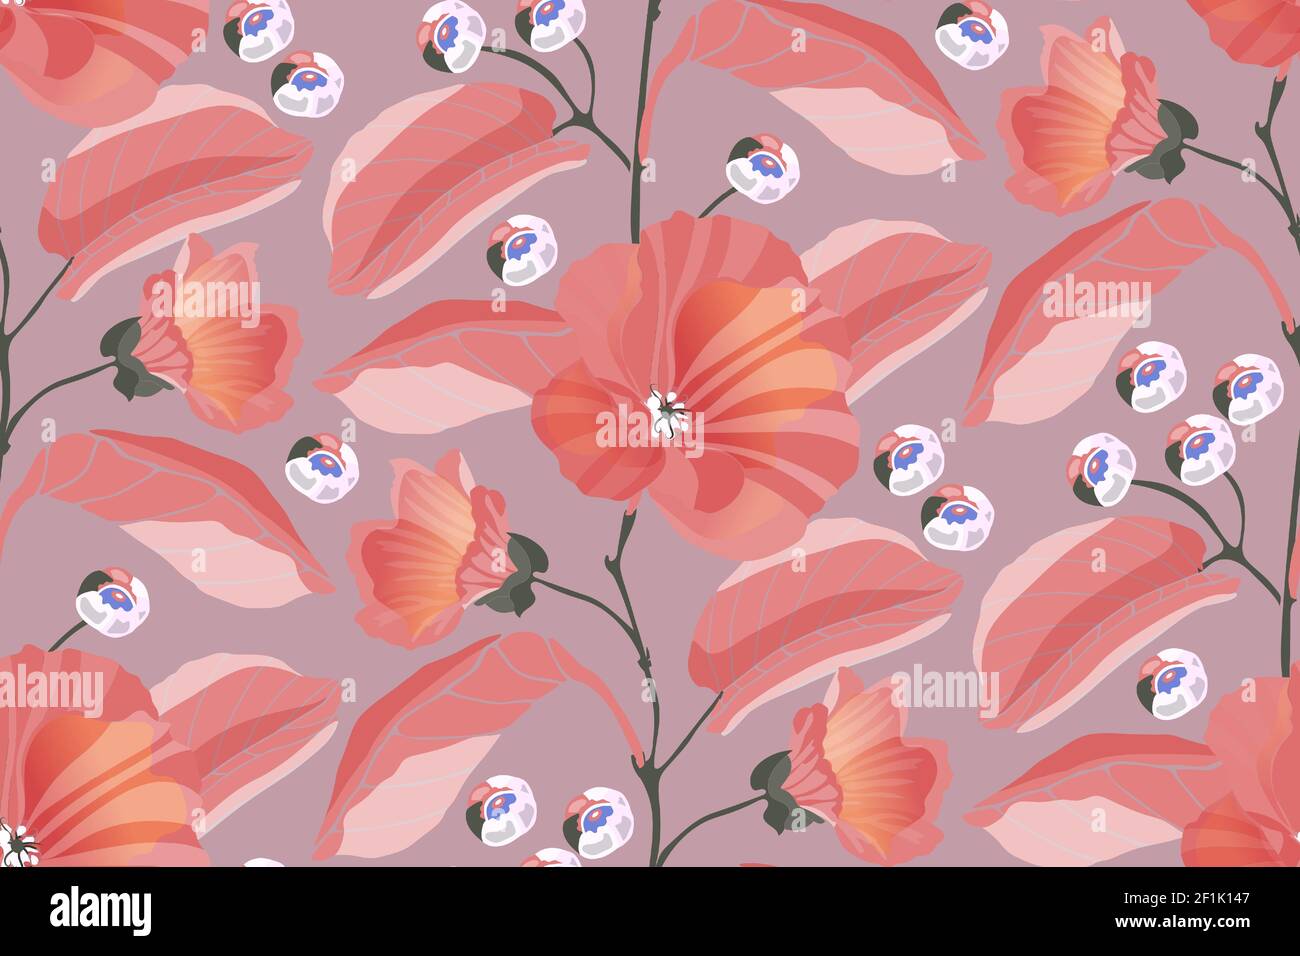 Motif Art floral vectoriel sans coutures. Mouches roses, branches, feuilles, baies bleues isolées sur un fond rose poussiéreux. Illustration de Vecteur